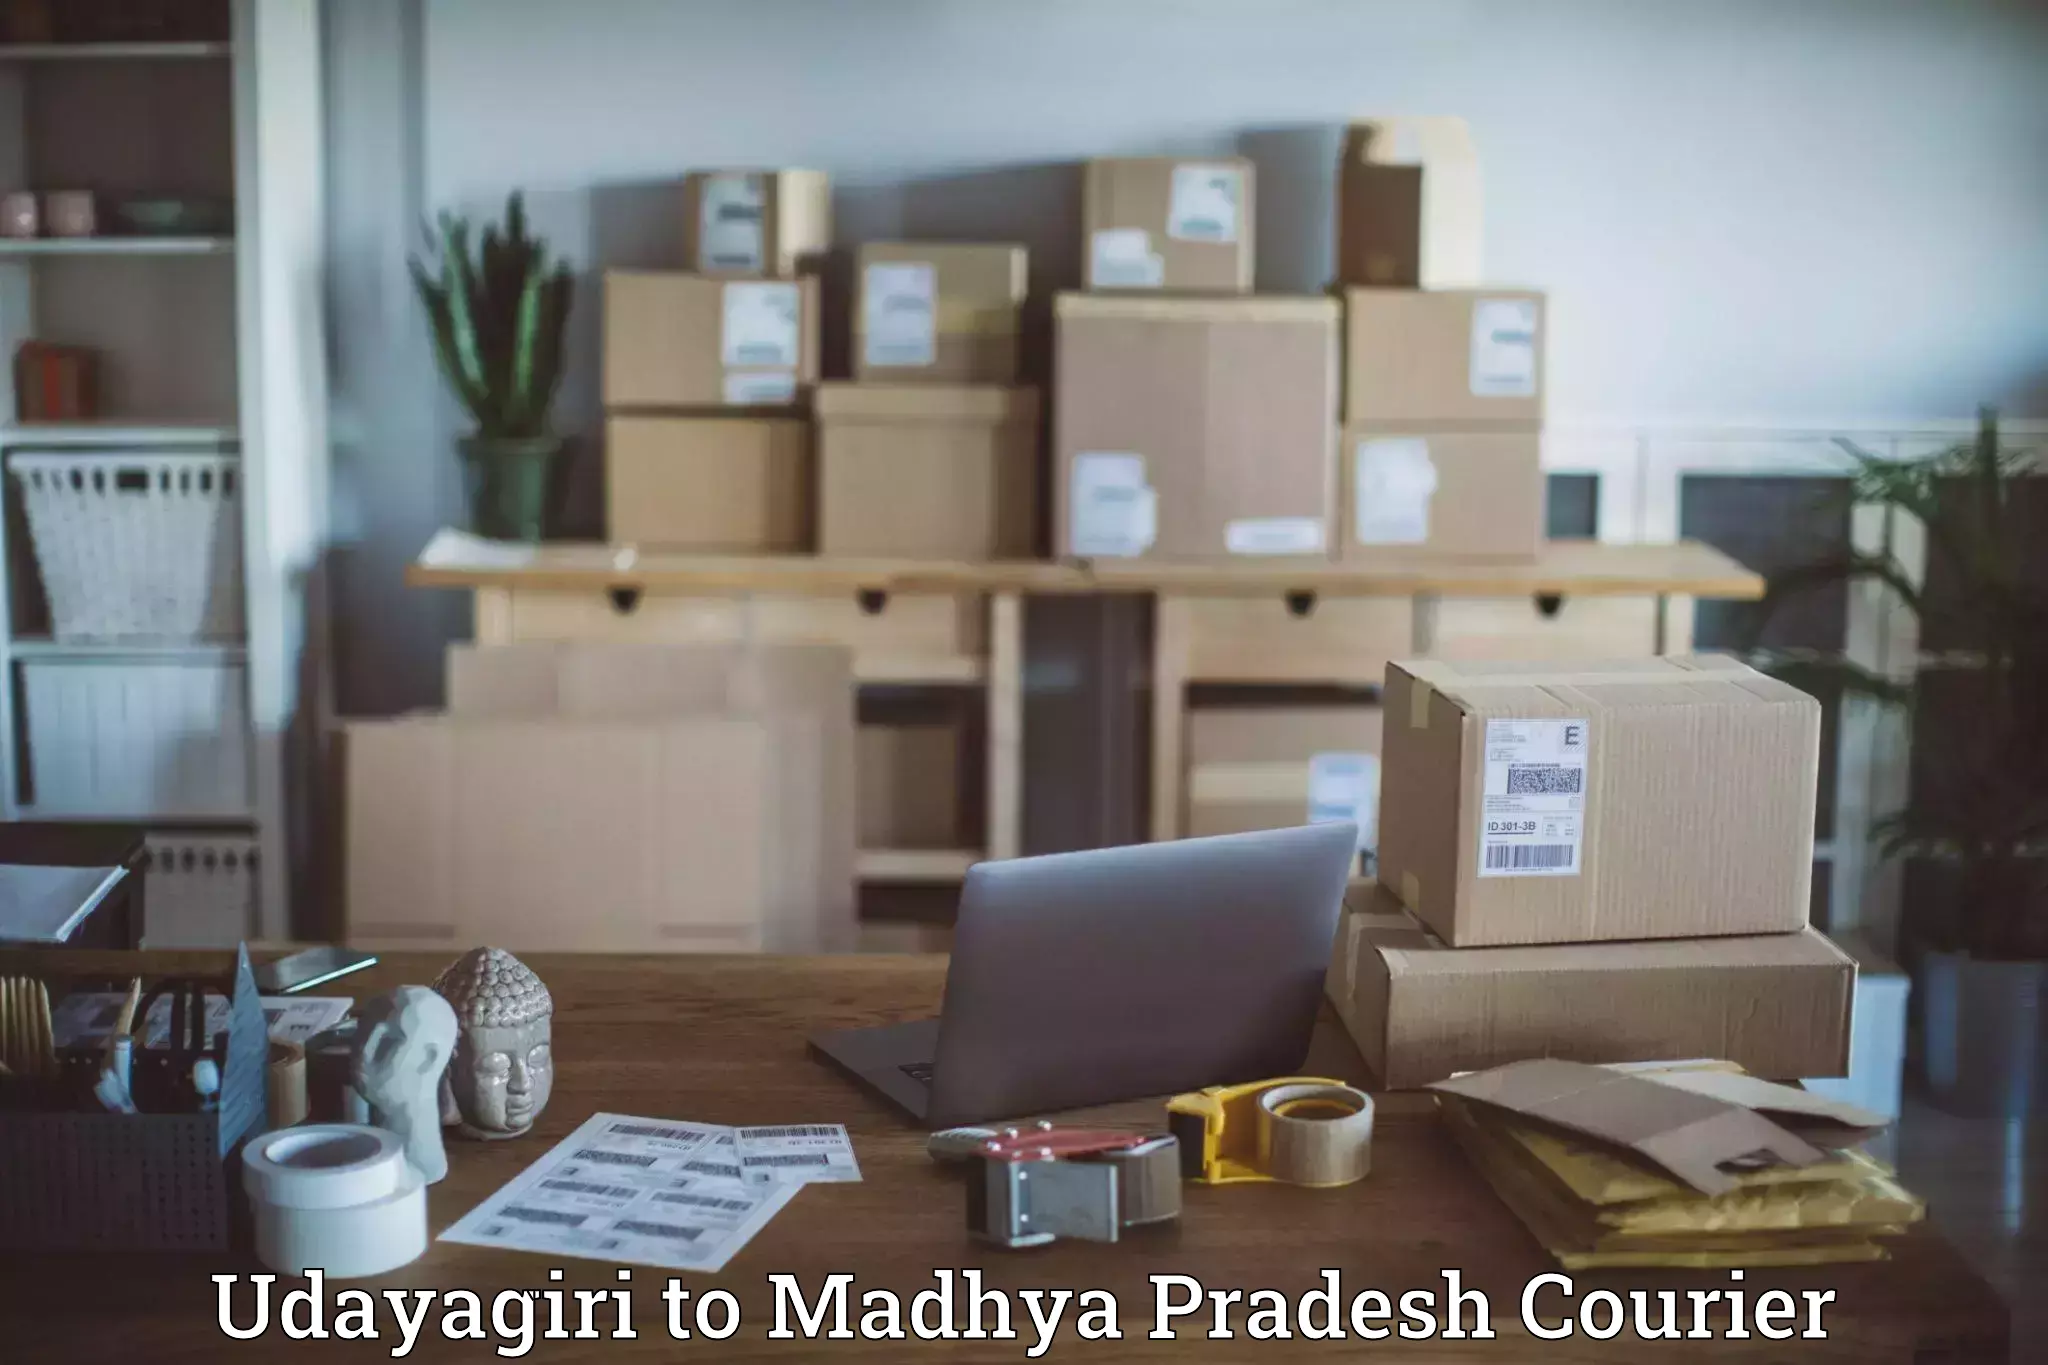 Pharmaceutical courier Udayagiri to Jabalpur